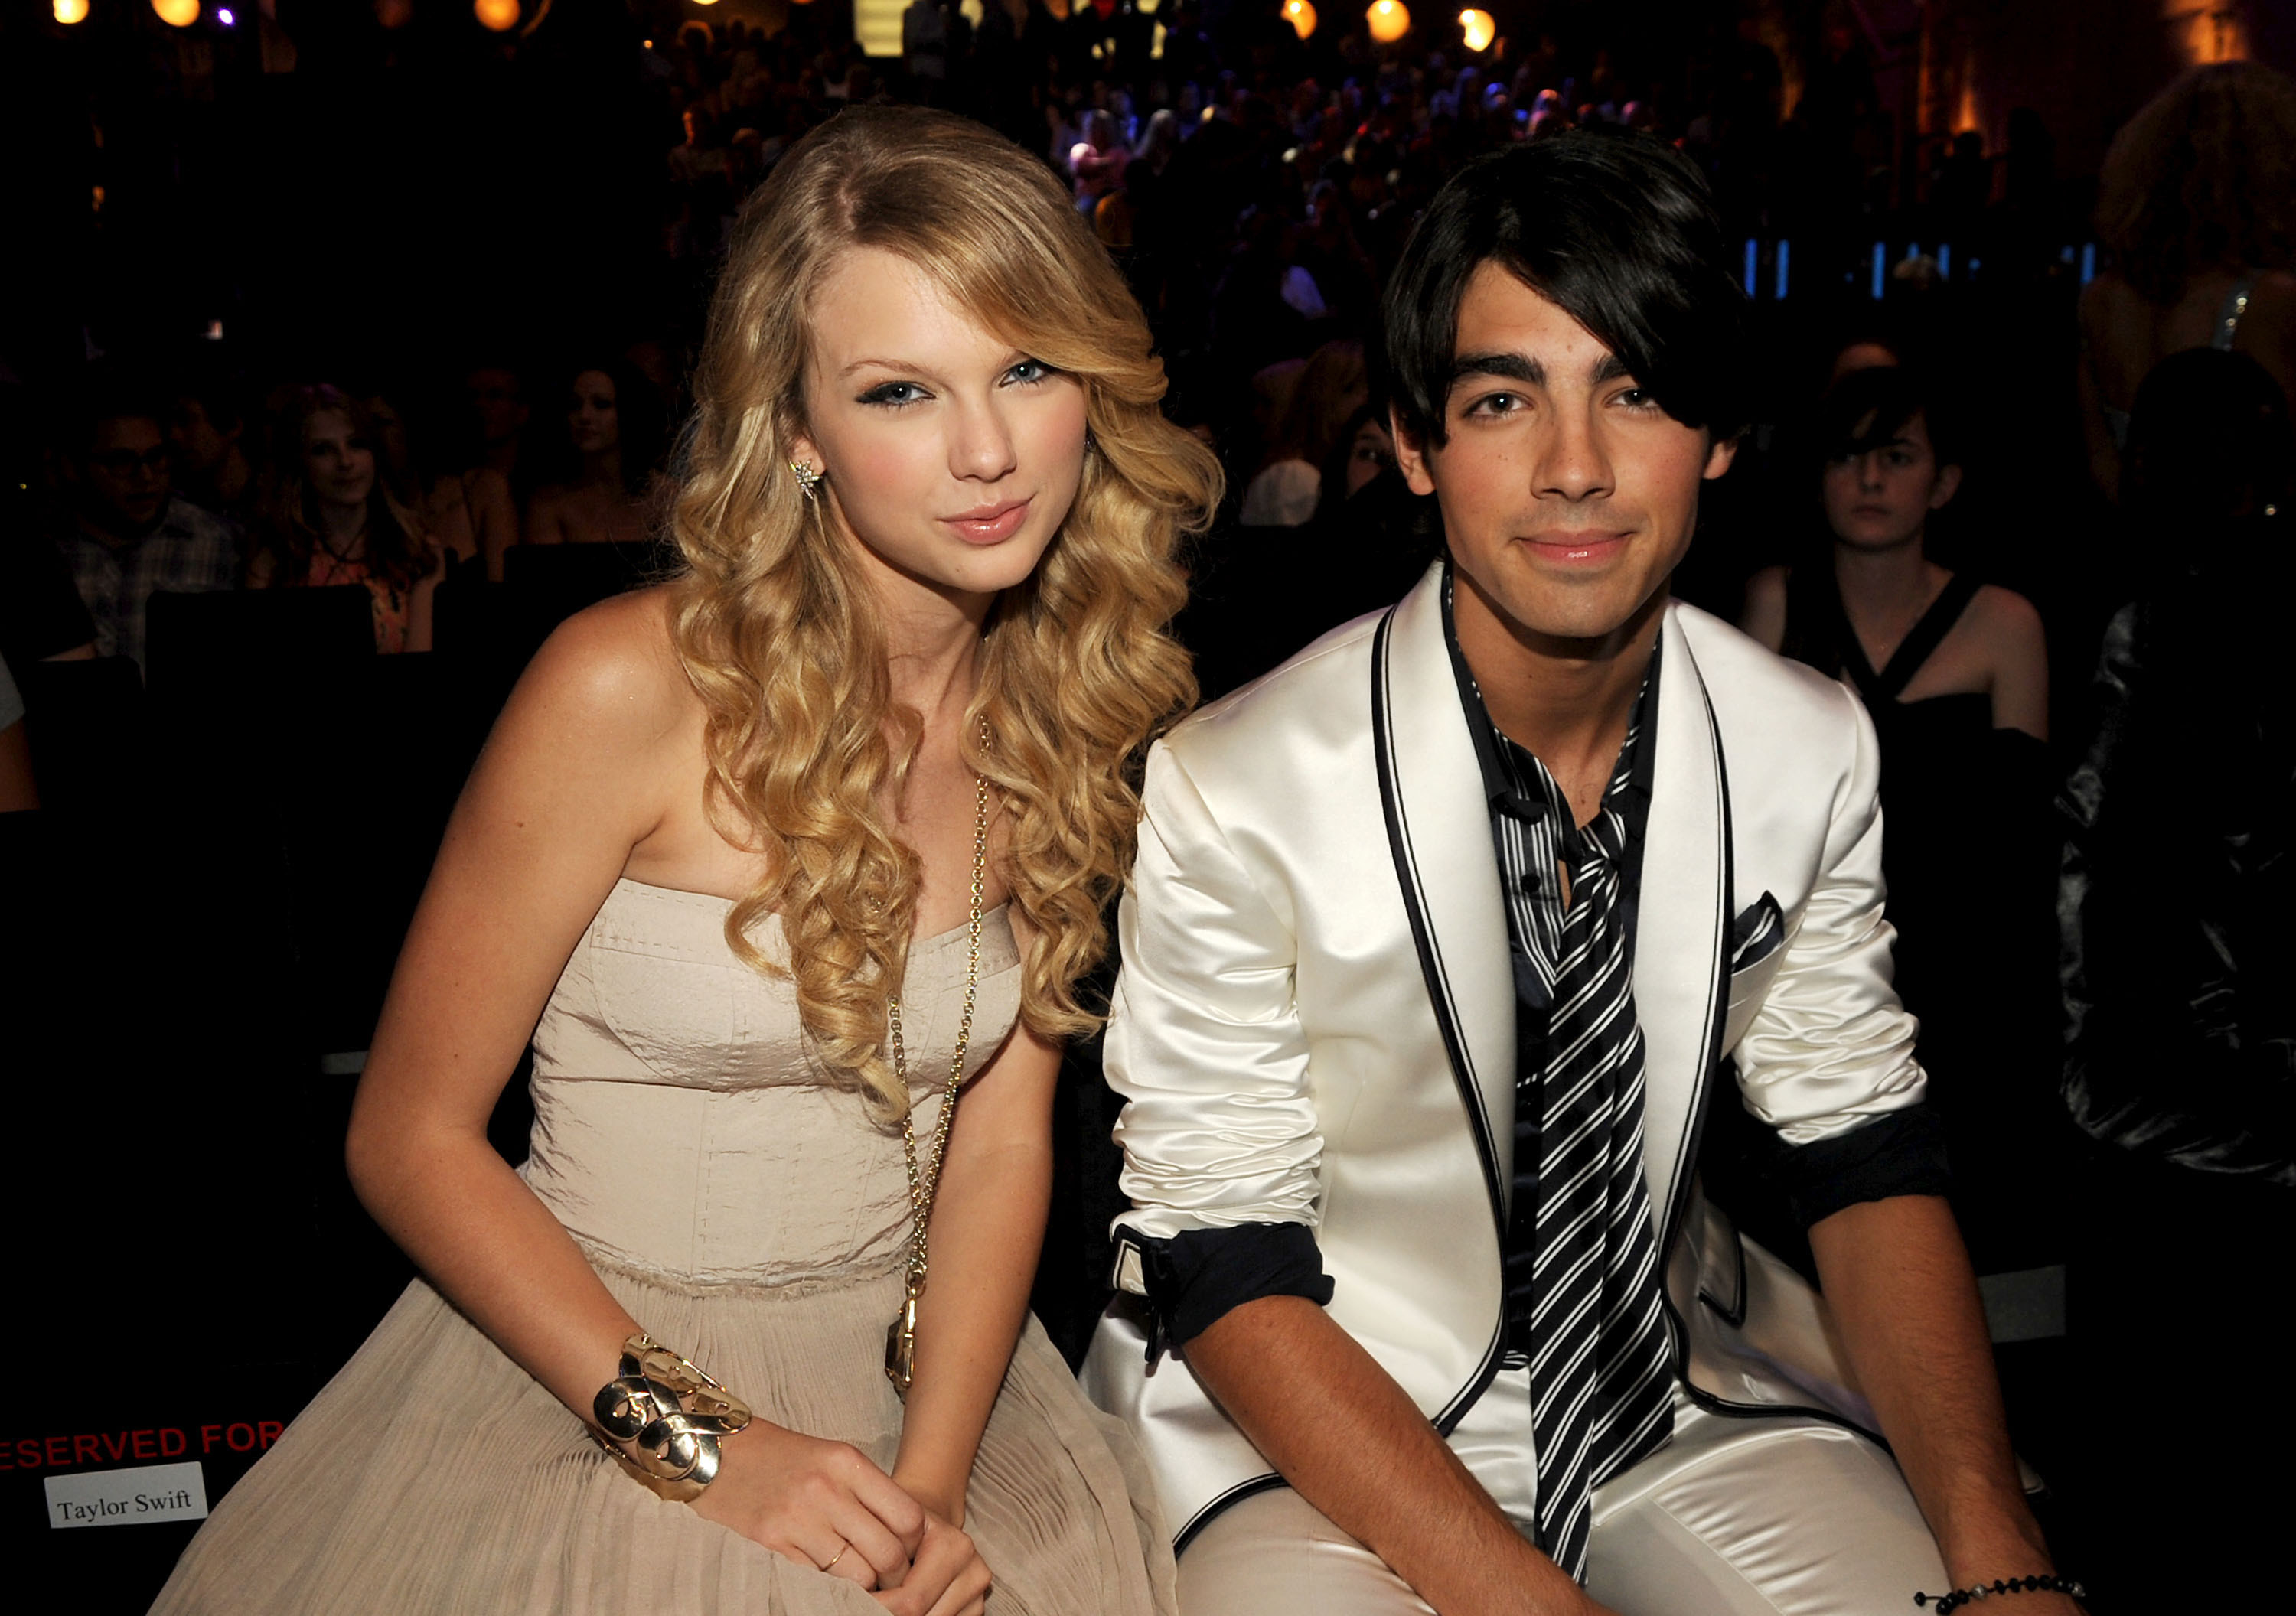 Taylor and Joe at the MTV Music Awards